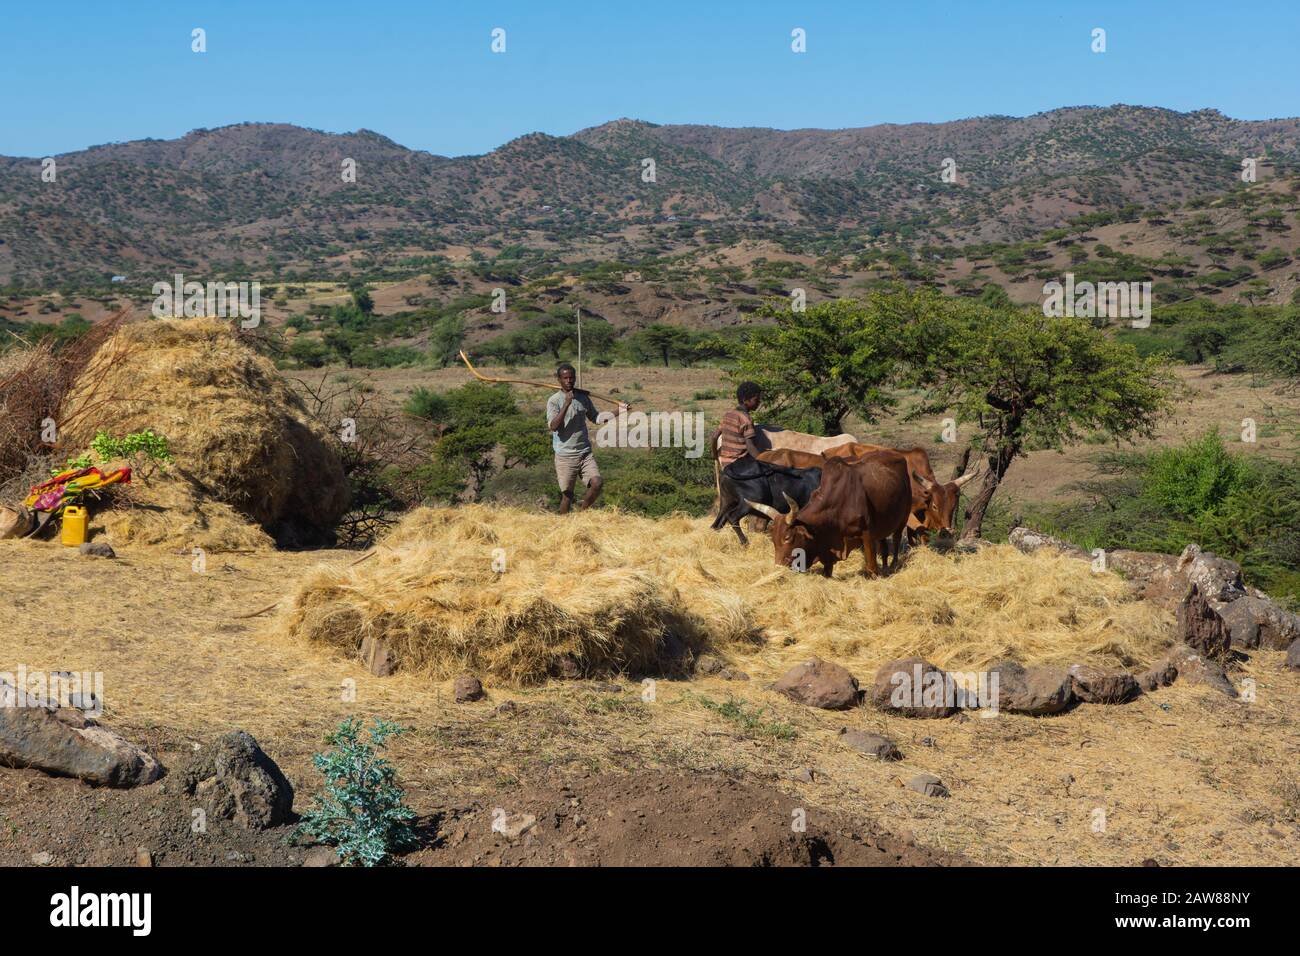 Lalibela, Ethiopie - Nov 2018: Deux hommes flirtent avec les vaches. Le teff est une céréale endémique à l'Ethiopie et largement utilisée dans la nourriture Banque D'Images